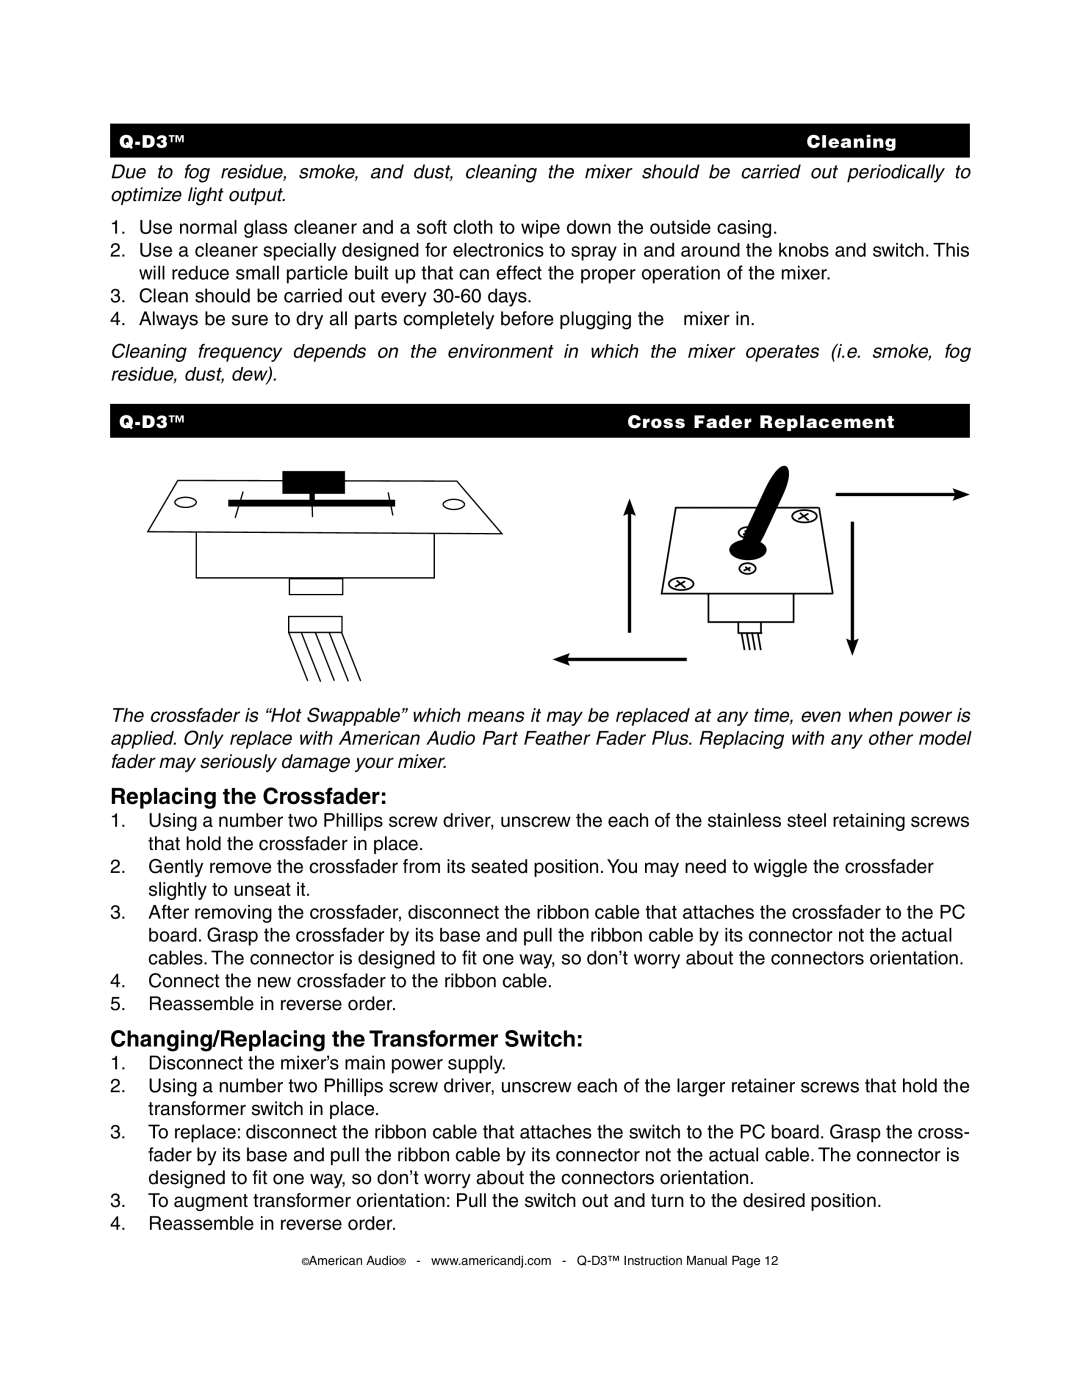 American Audio Q-D3 manual Replacing the Crossfader 